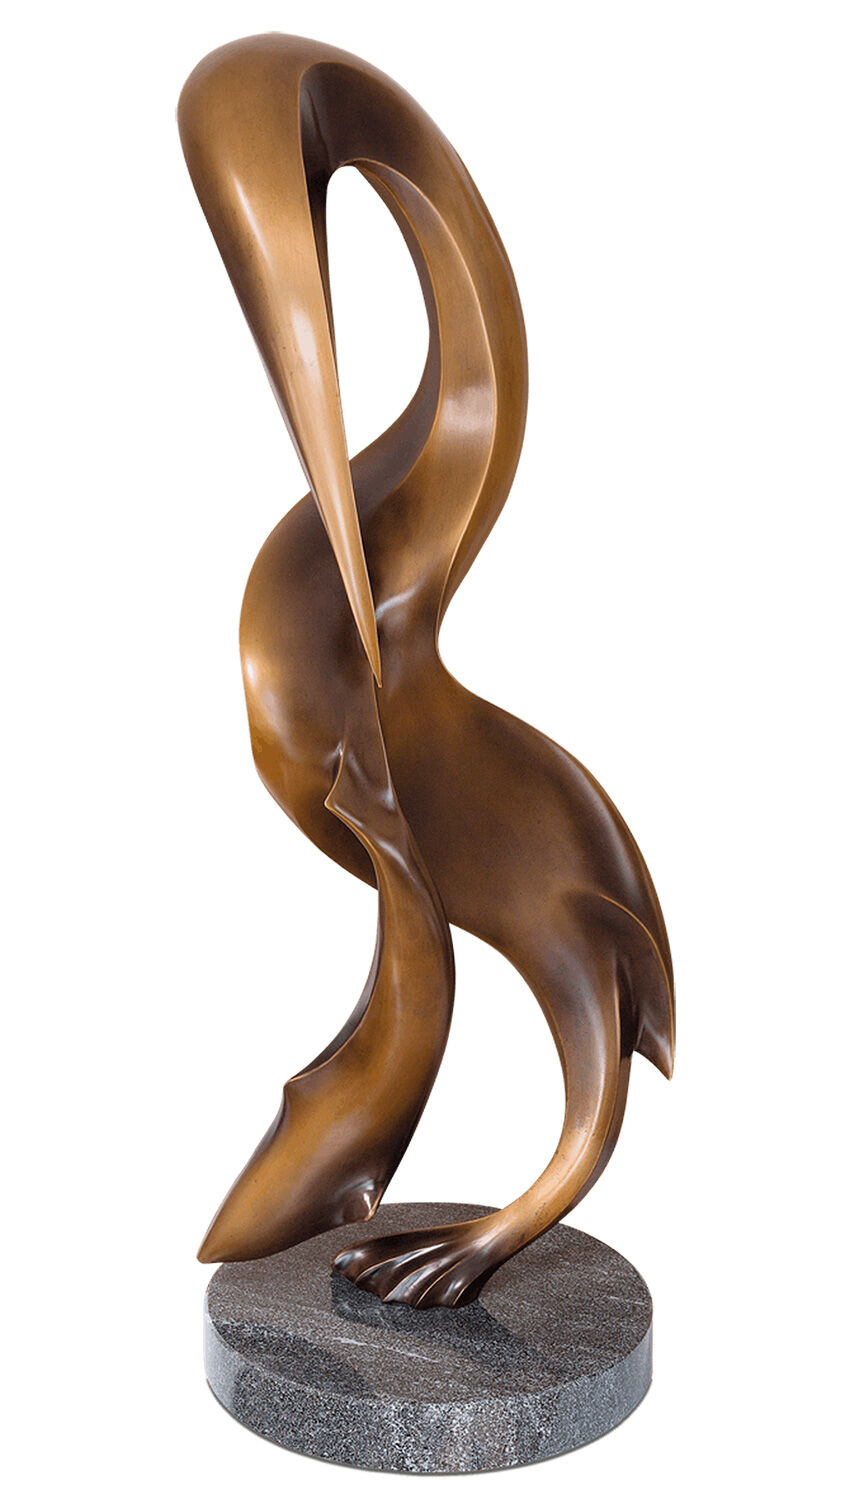 Sculpture "Pelican" (2013), bronze by Robert Simon